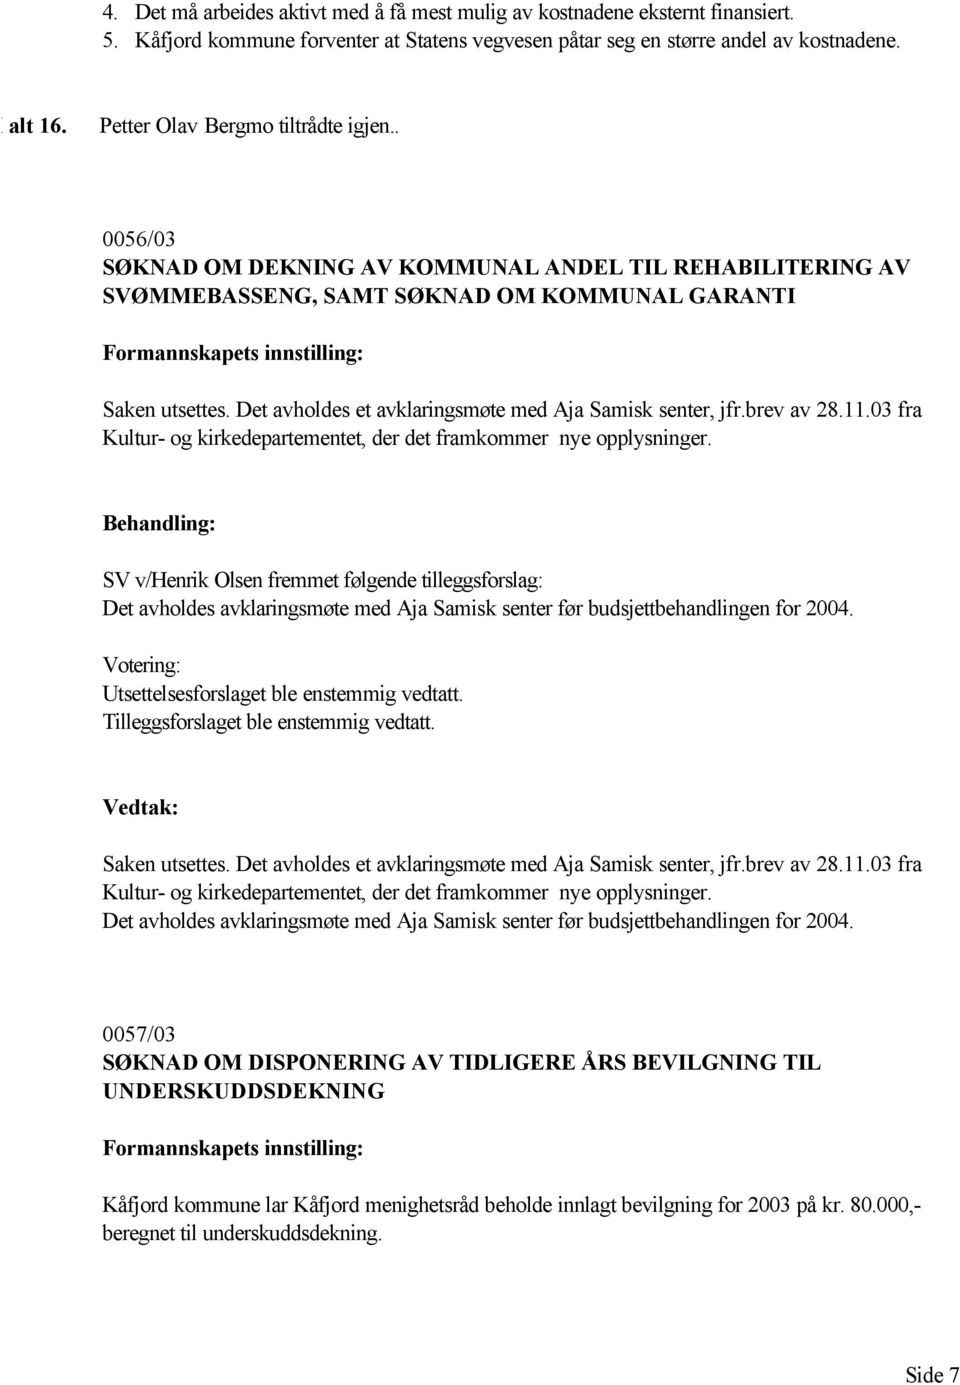 Det avholdes et avklaringsmøte med Aja Samisk senter, jfr.brev av 28.11.03 fra Kultur- og kirkedepartementet, der det framkommer nye opplysninger.